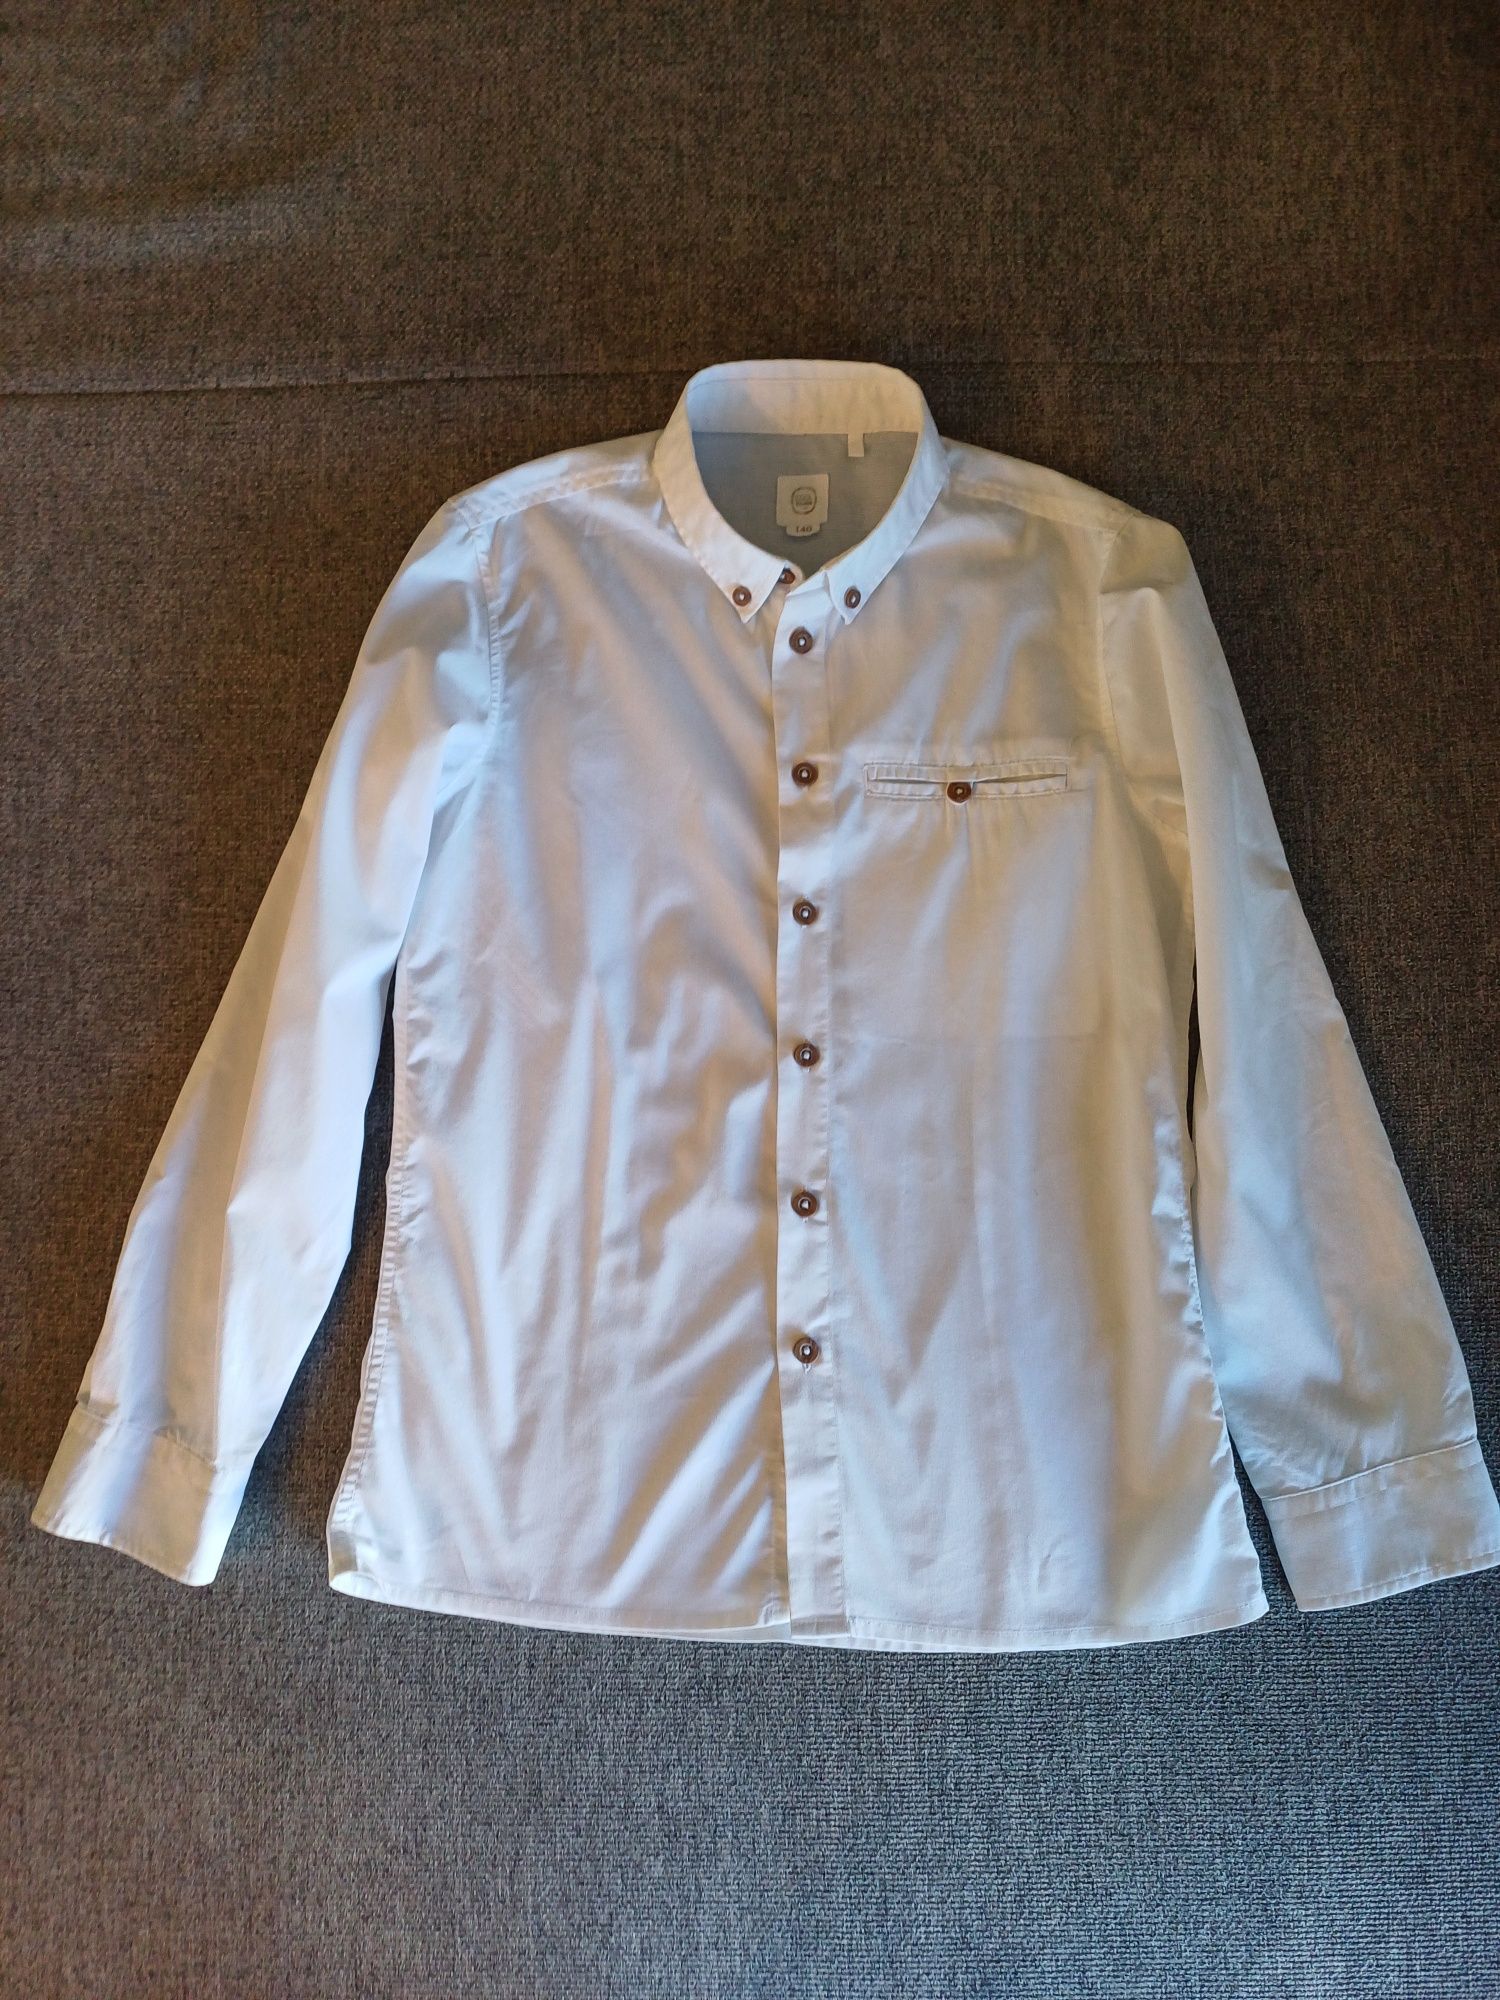 Koszula chłopięca białą Smyk rozmiar 140